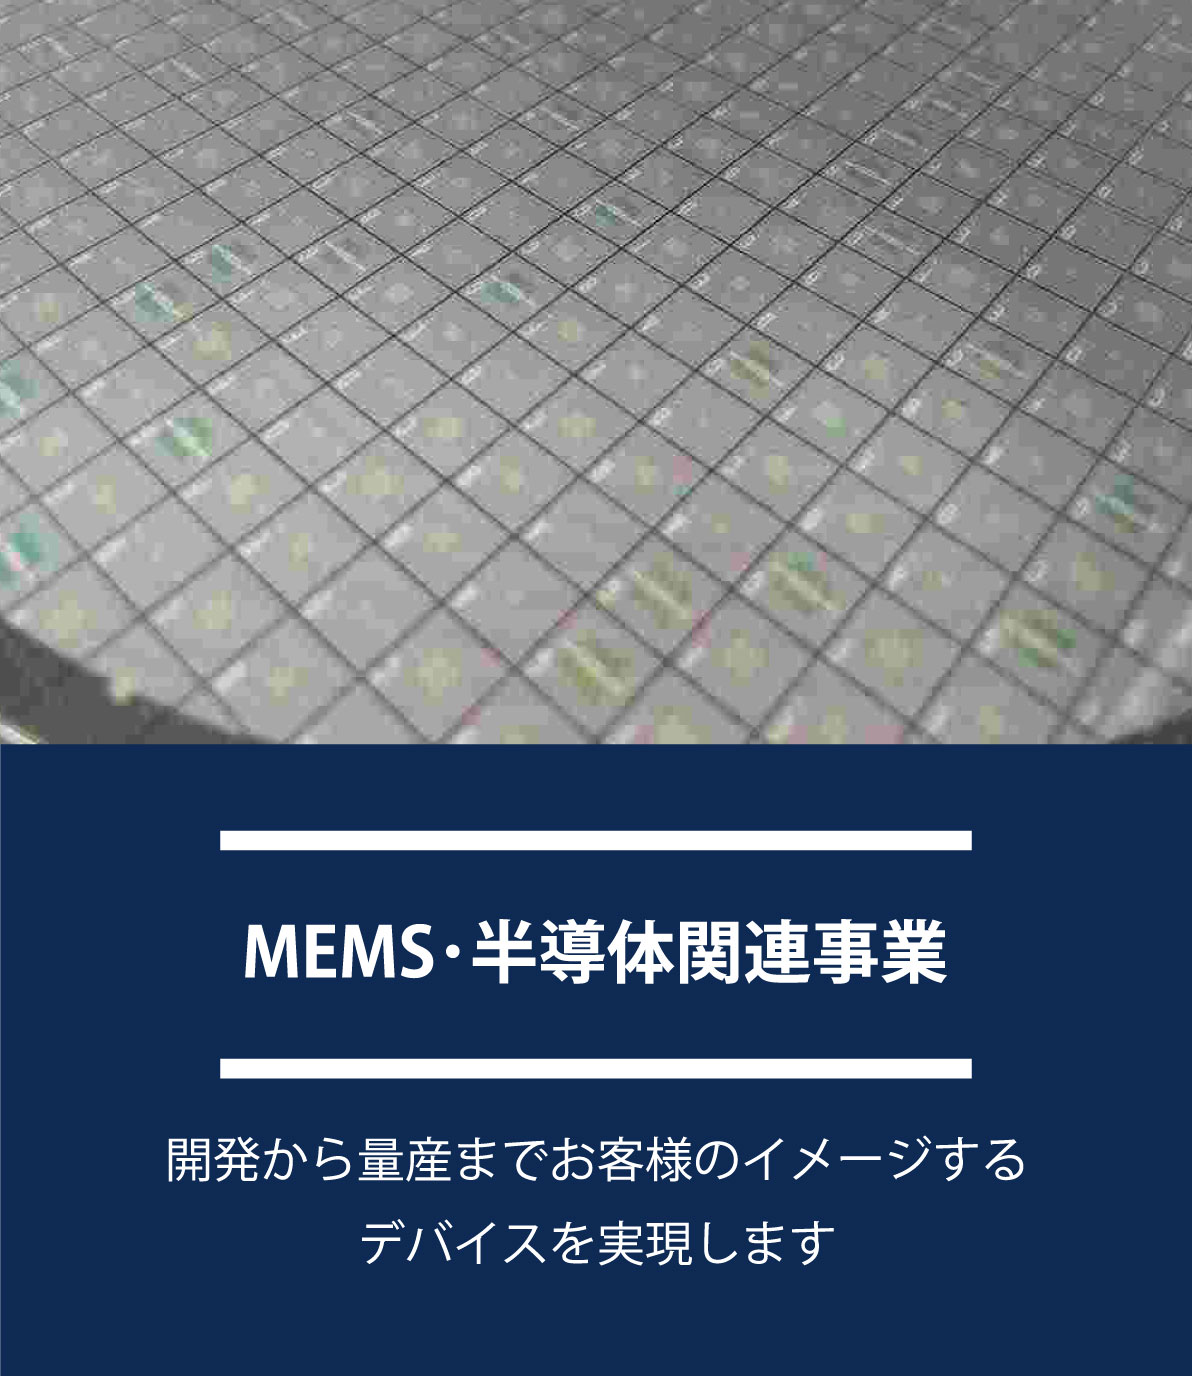 MEMS･半導体関連事業